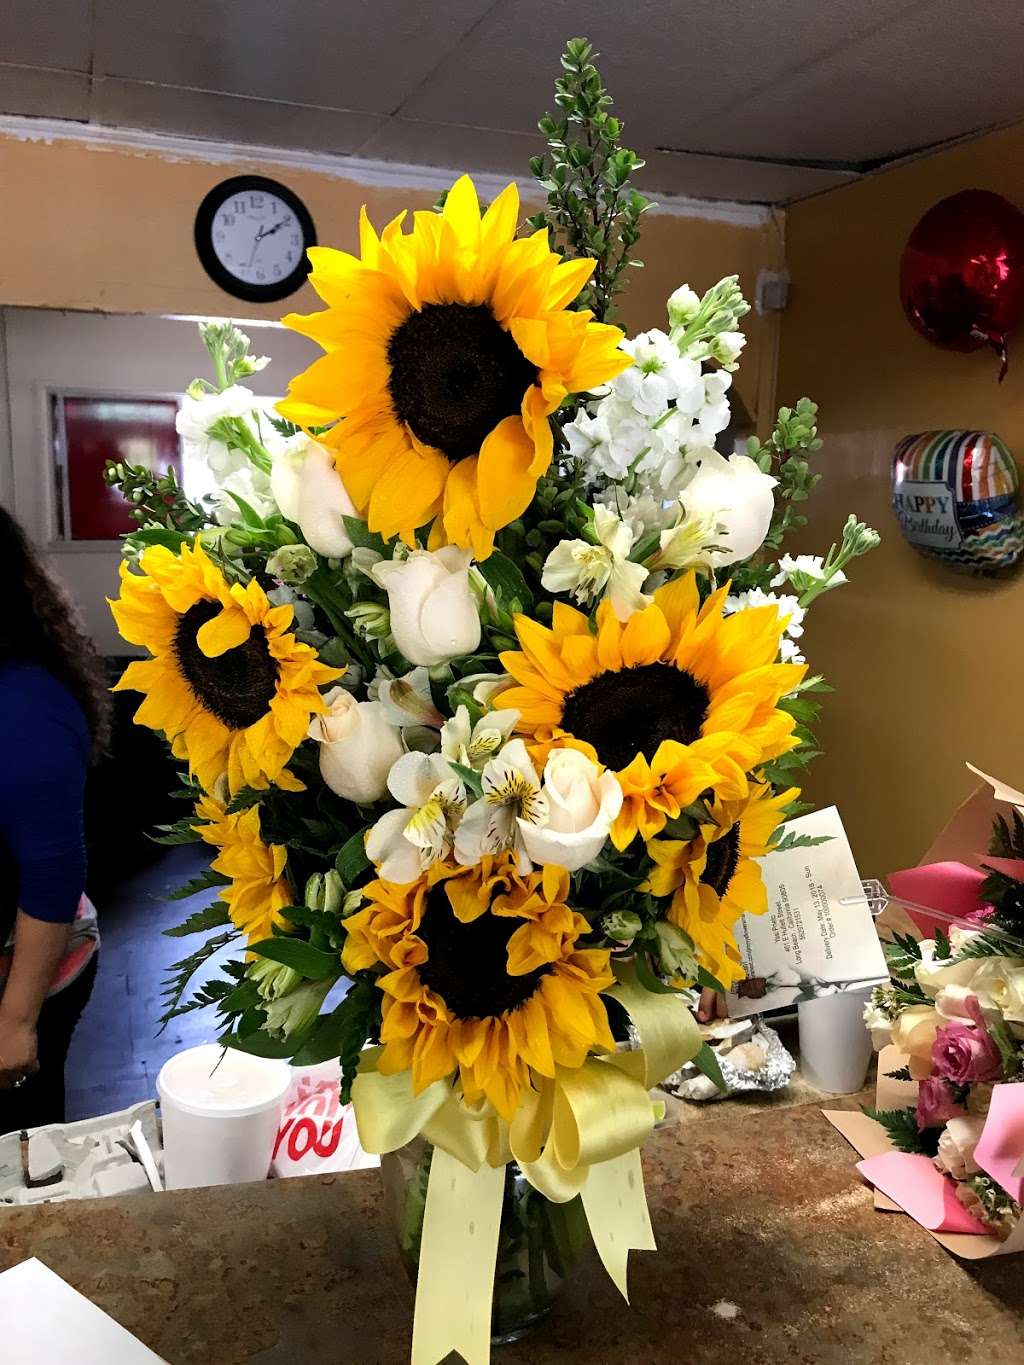 Jimmys Flower Arrangements | 722 E South St, Long Beach, CA 90805 | Phone: (562) 612-0901